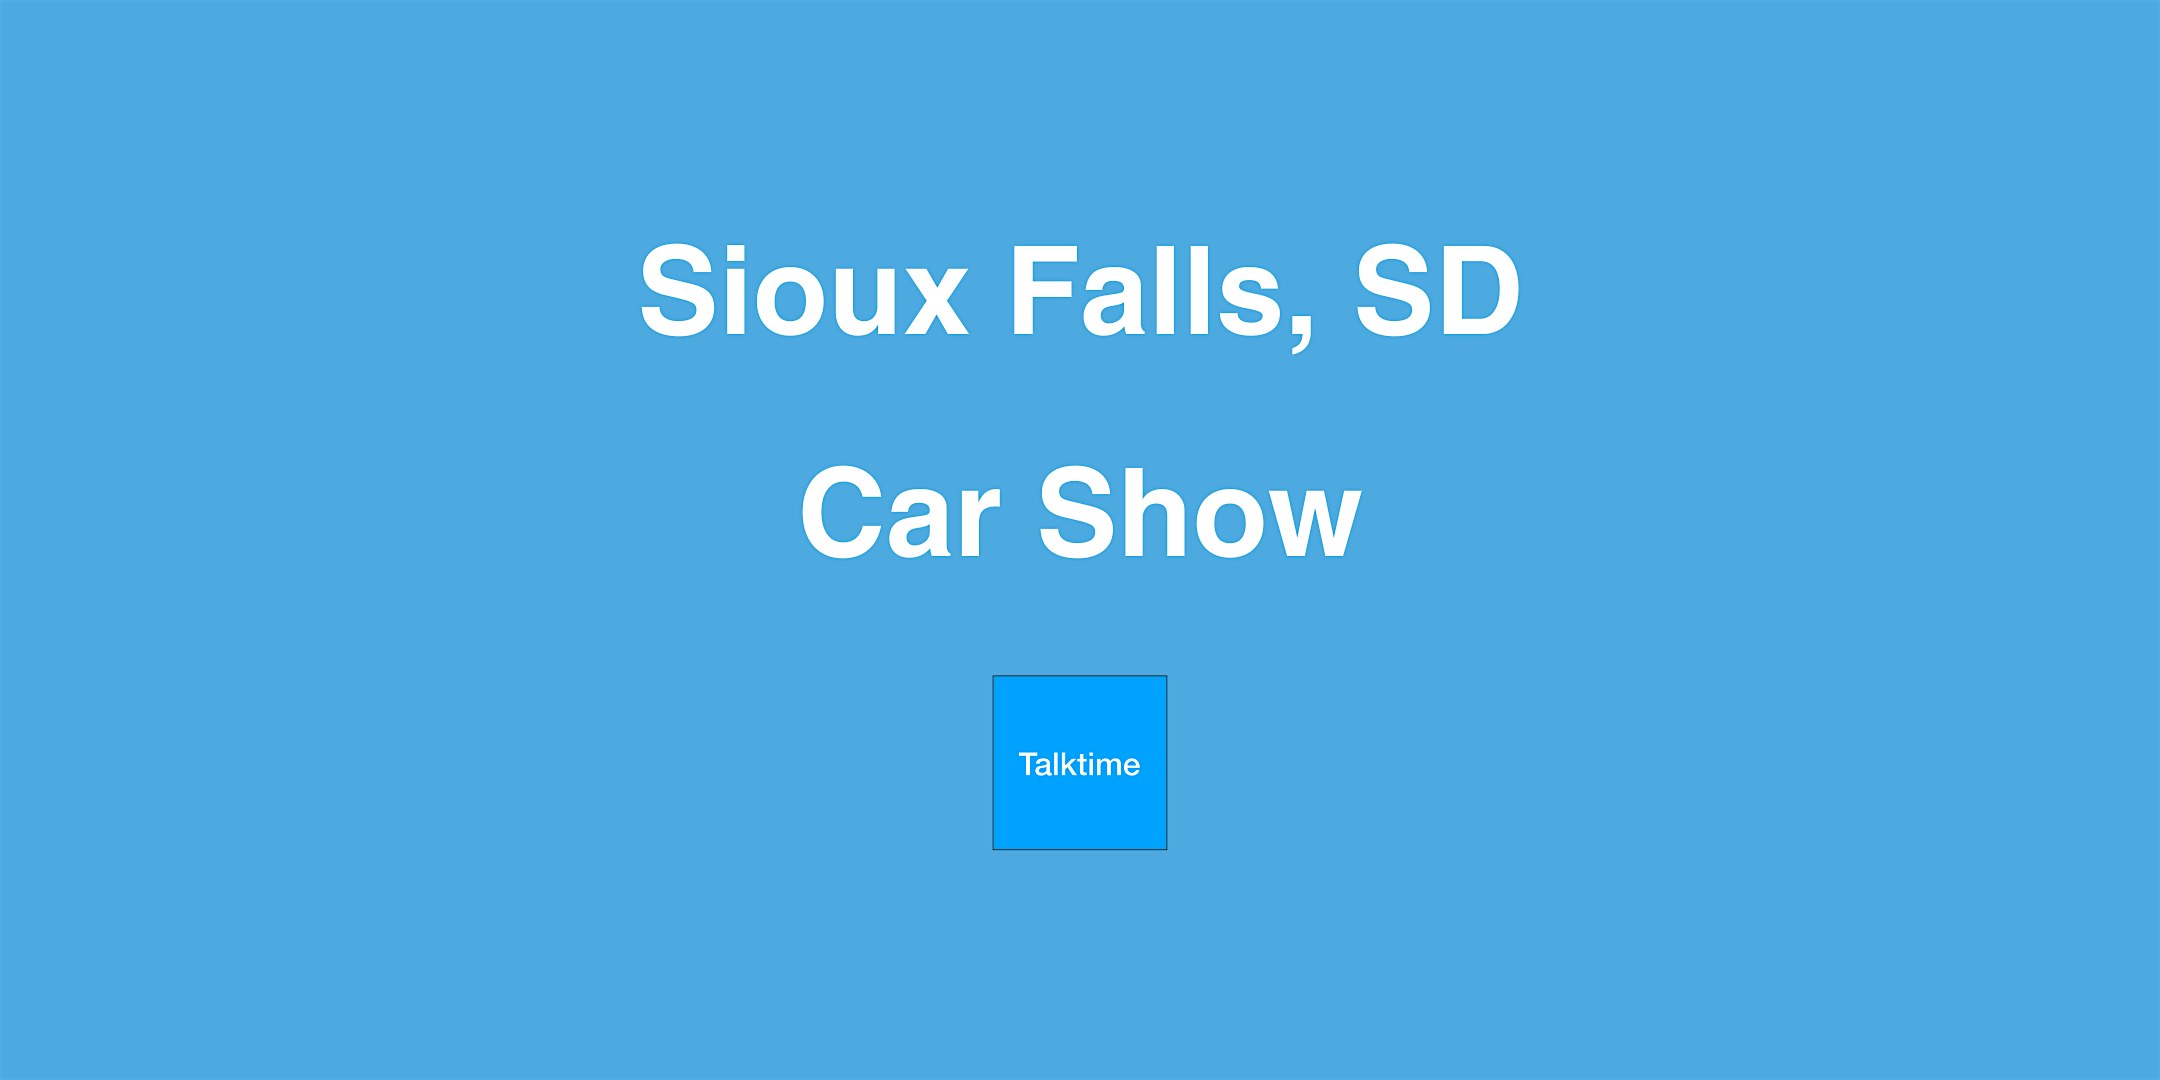 Car Show - Sioux Falls